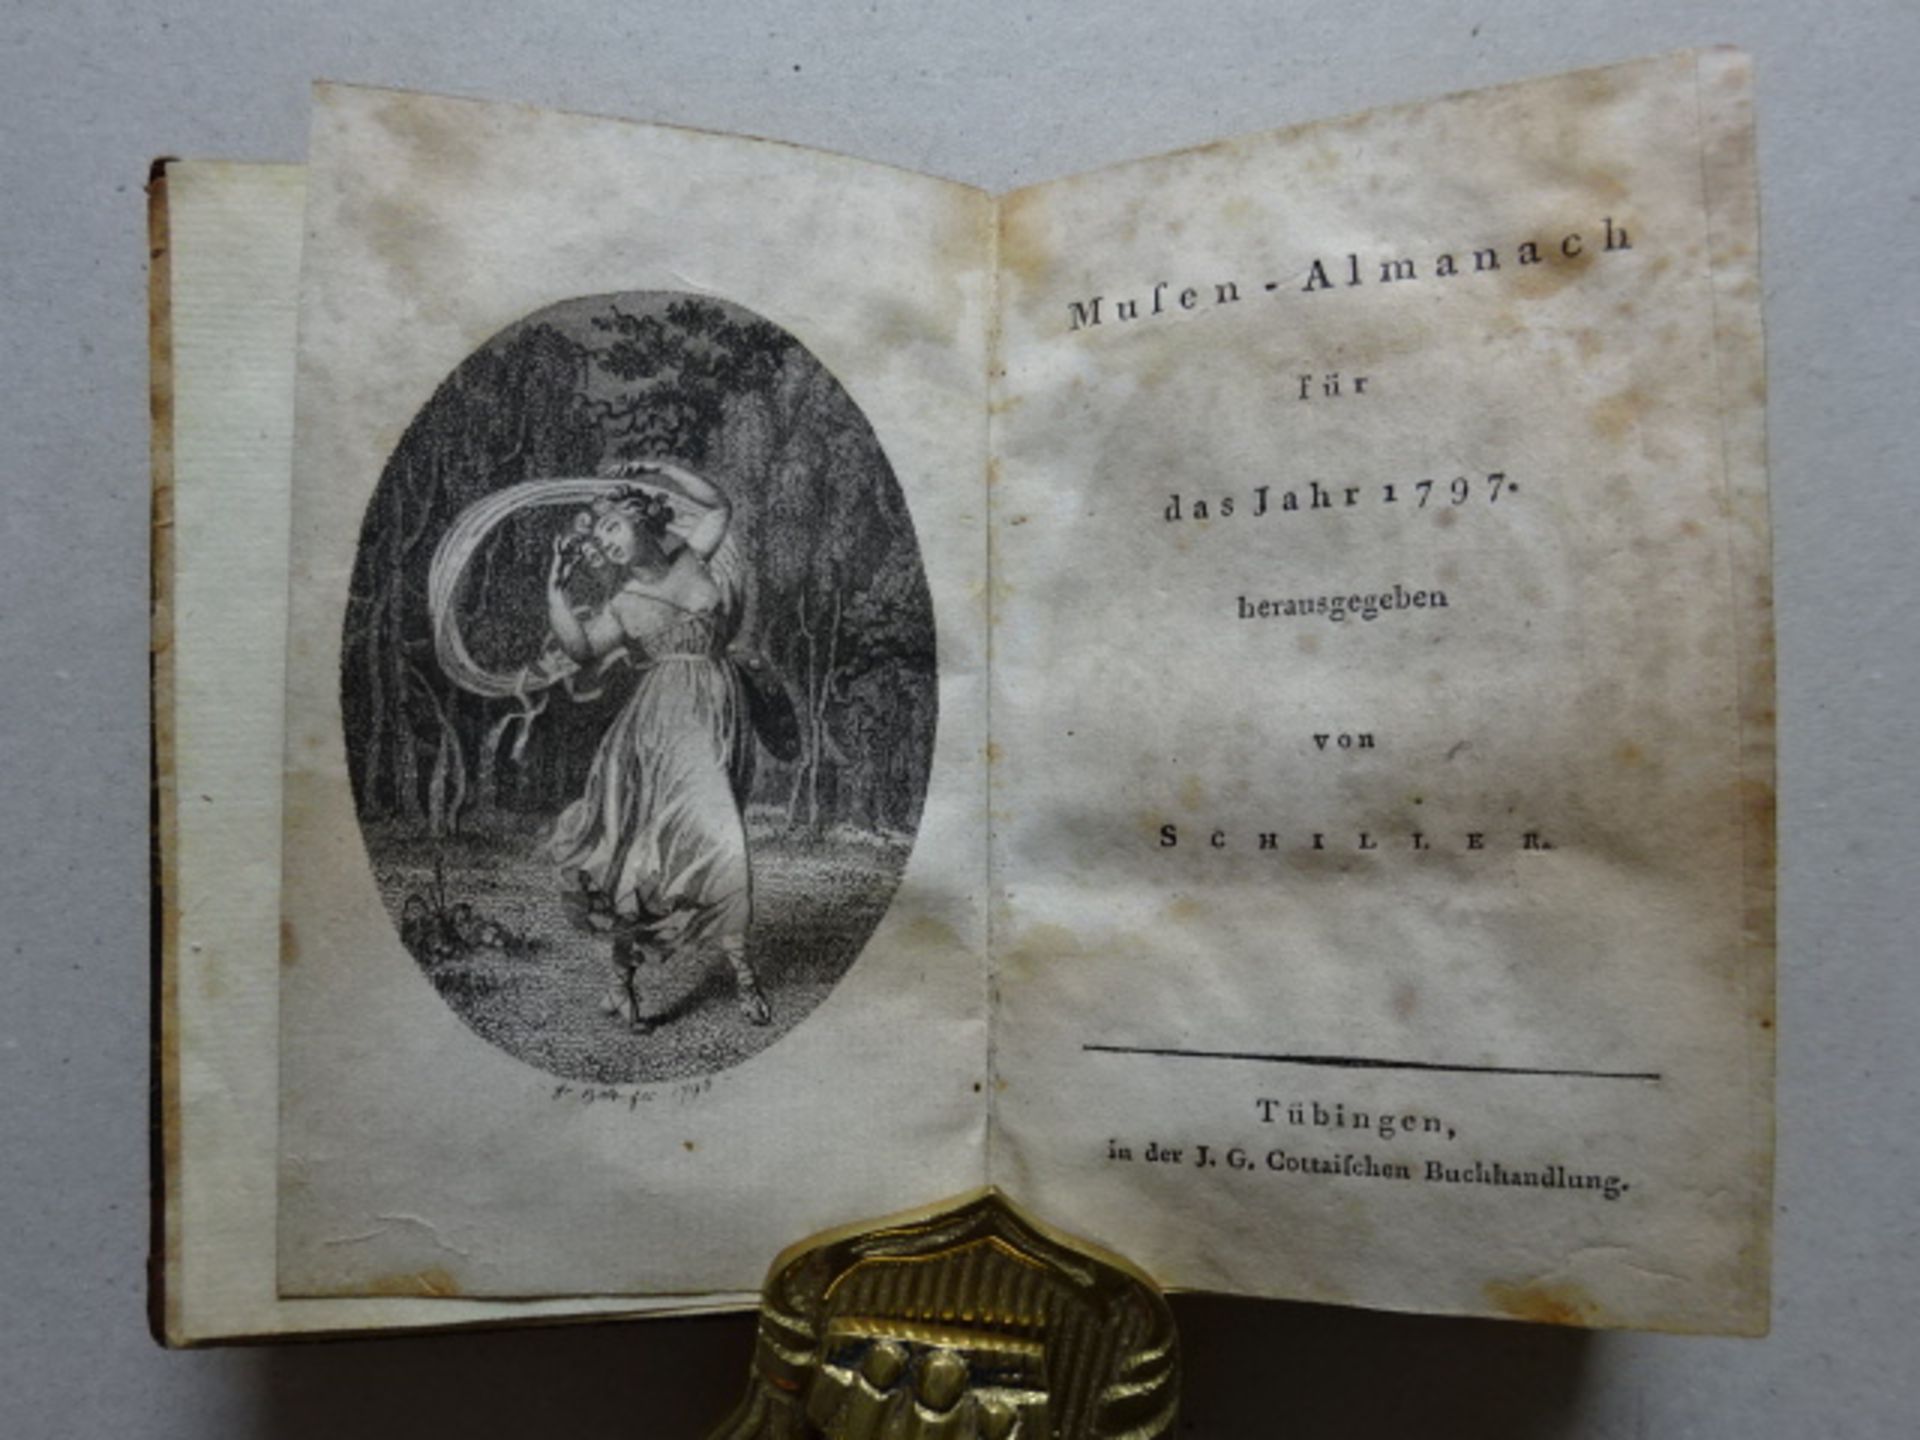 Schiller - Musen-Almanach 1797 - Image 2 of 4